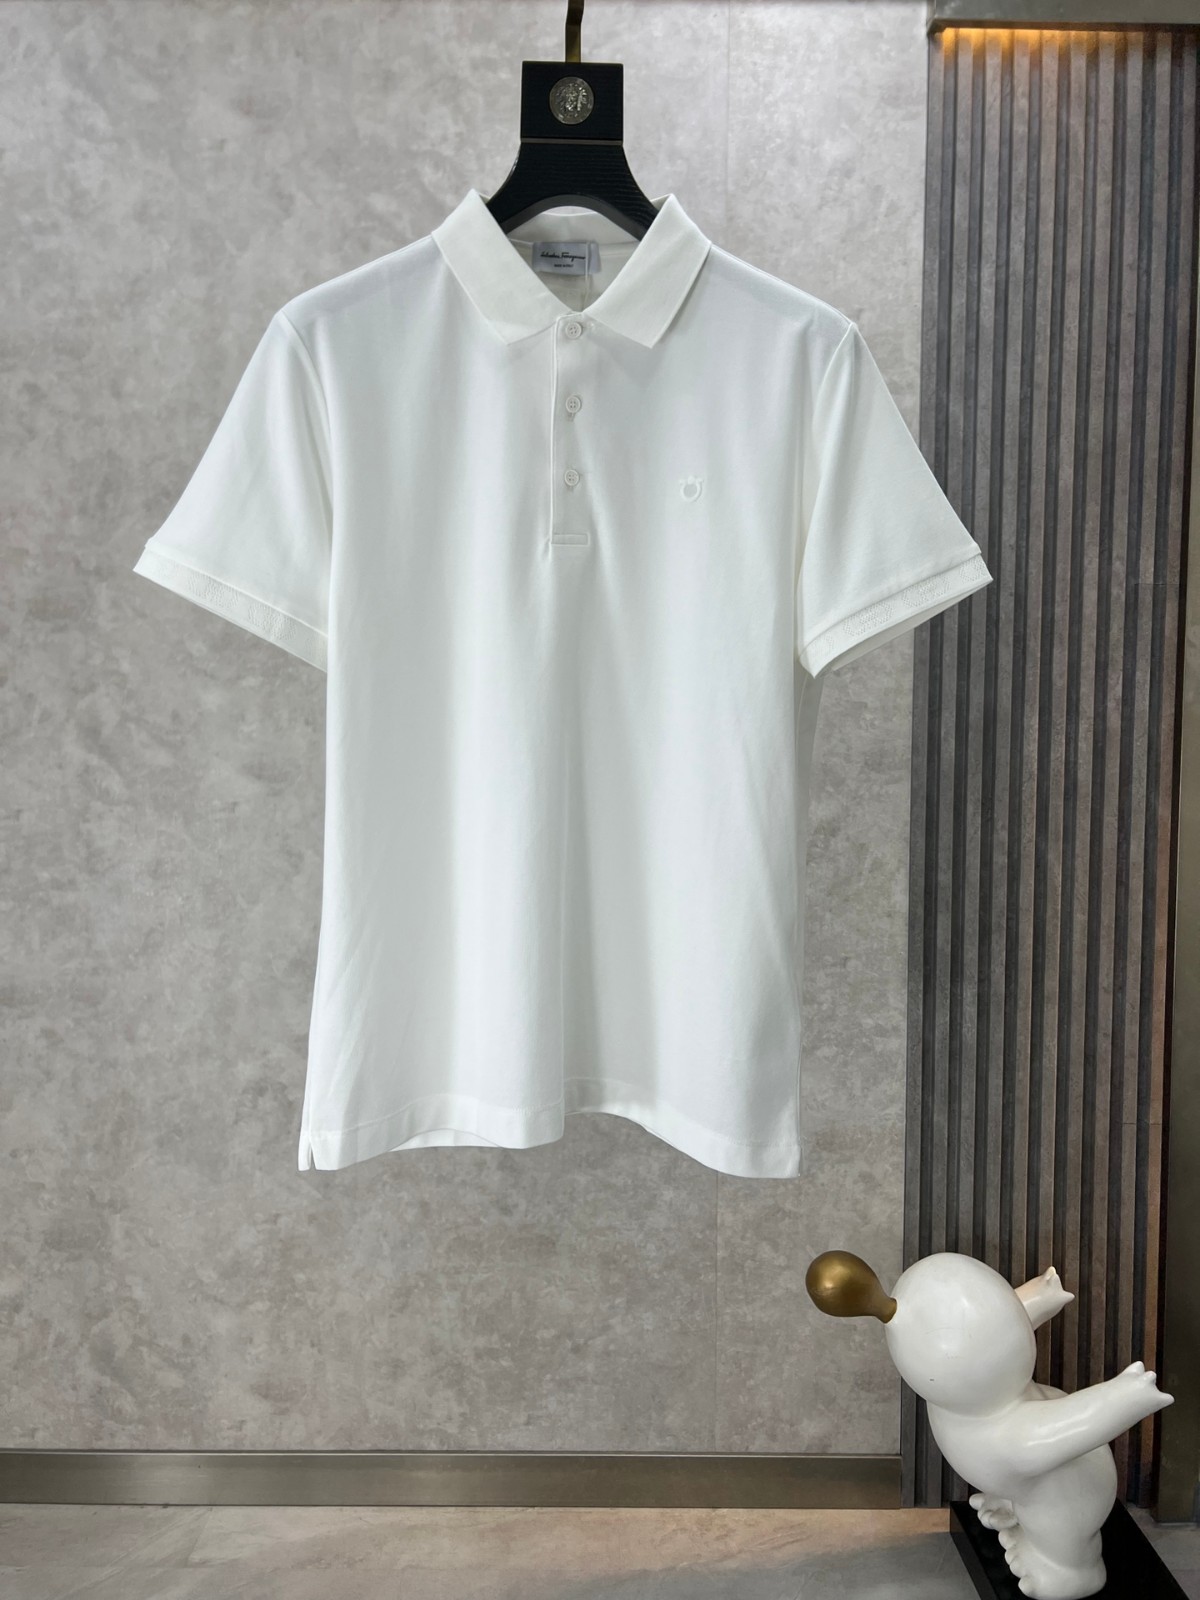 シンプル サルヴァトーレ・フェラガモ 半袖Tシャツ コピー ポロシャツ ホワイト